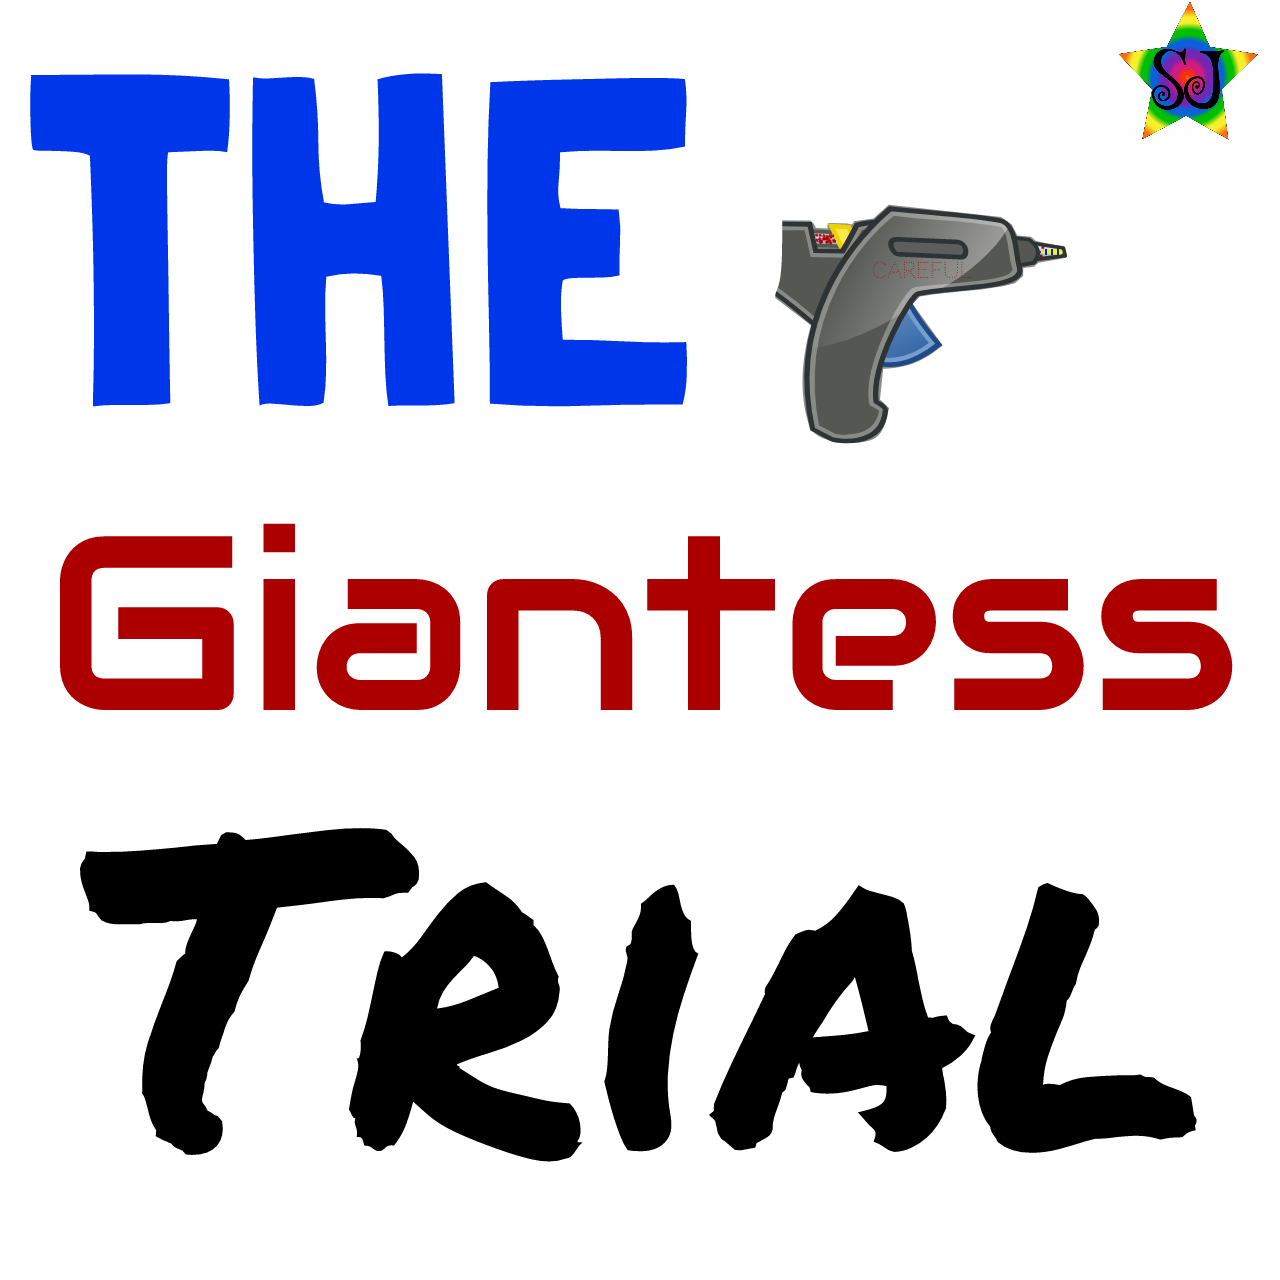 Giantess Interactive Game